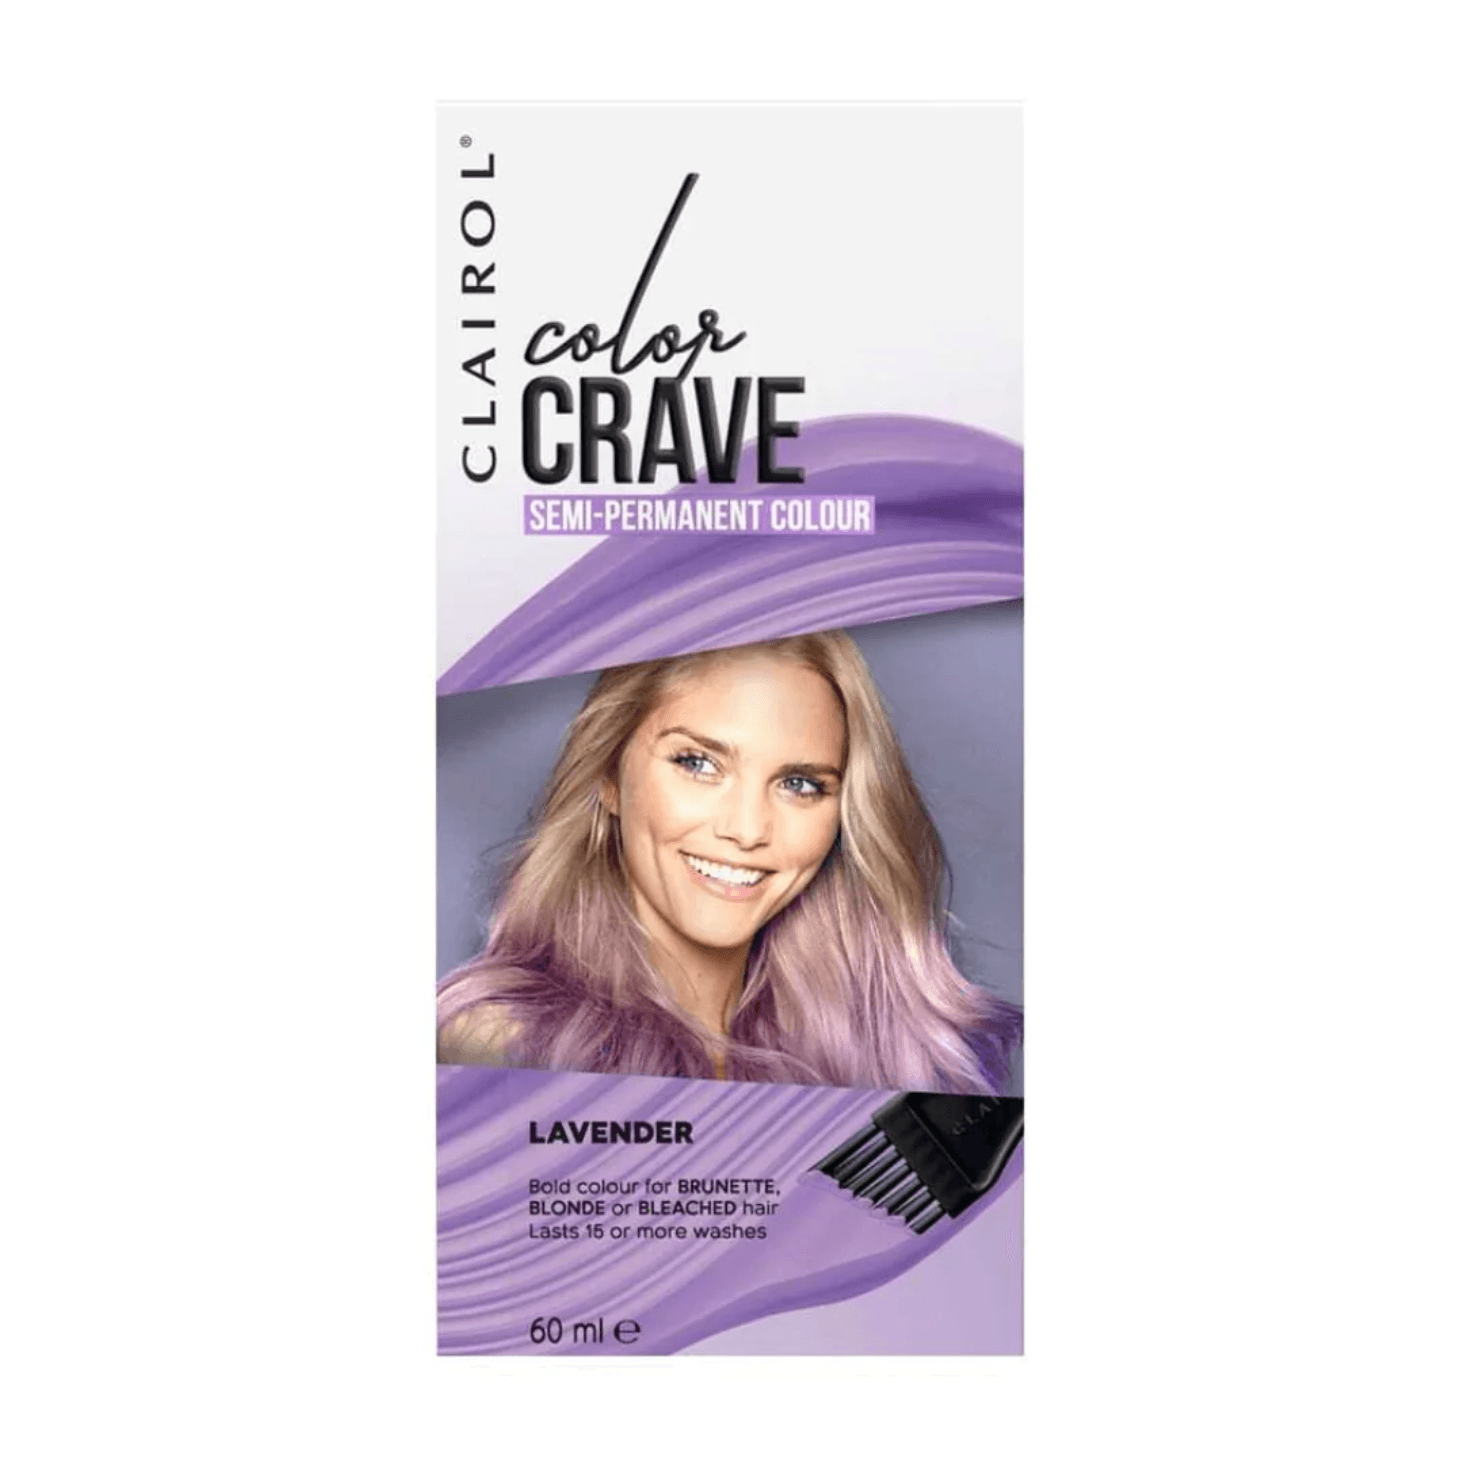 Clairol Colour Crave Semi Permanent Colour Lavender 60ml - www.indiancart.com.au - Hair Color - Clairol - CLAIROL